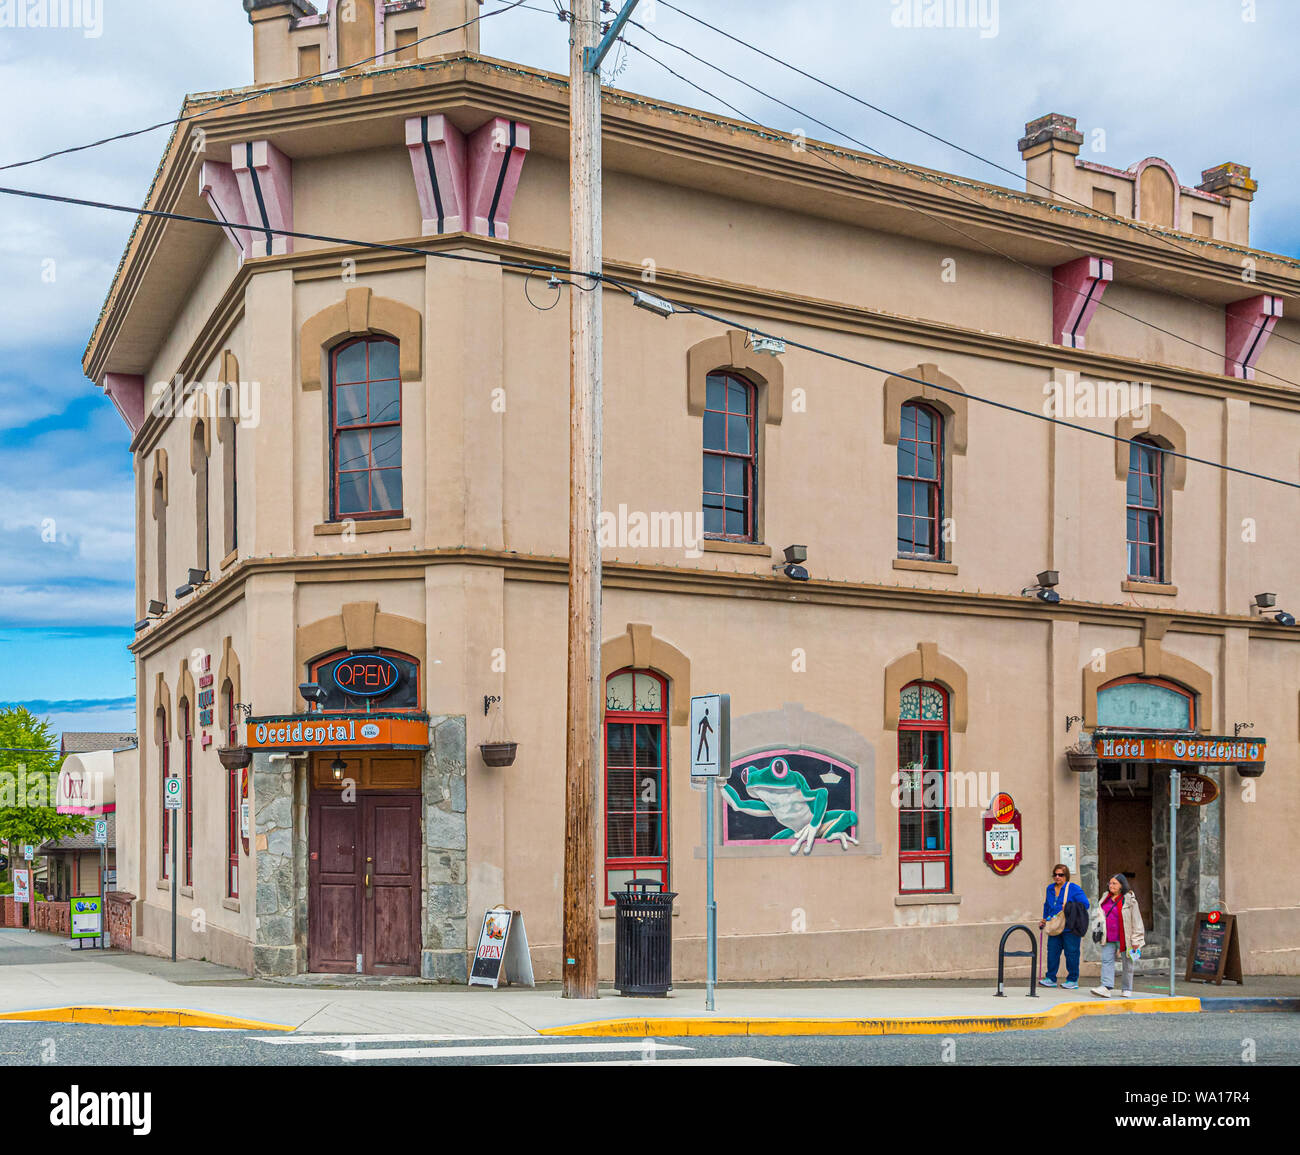 The colorful Occidental Pub in Nanaimo, British Columbia, Canada Stock Photo